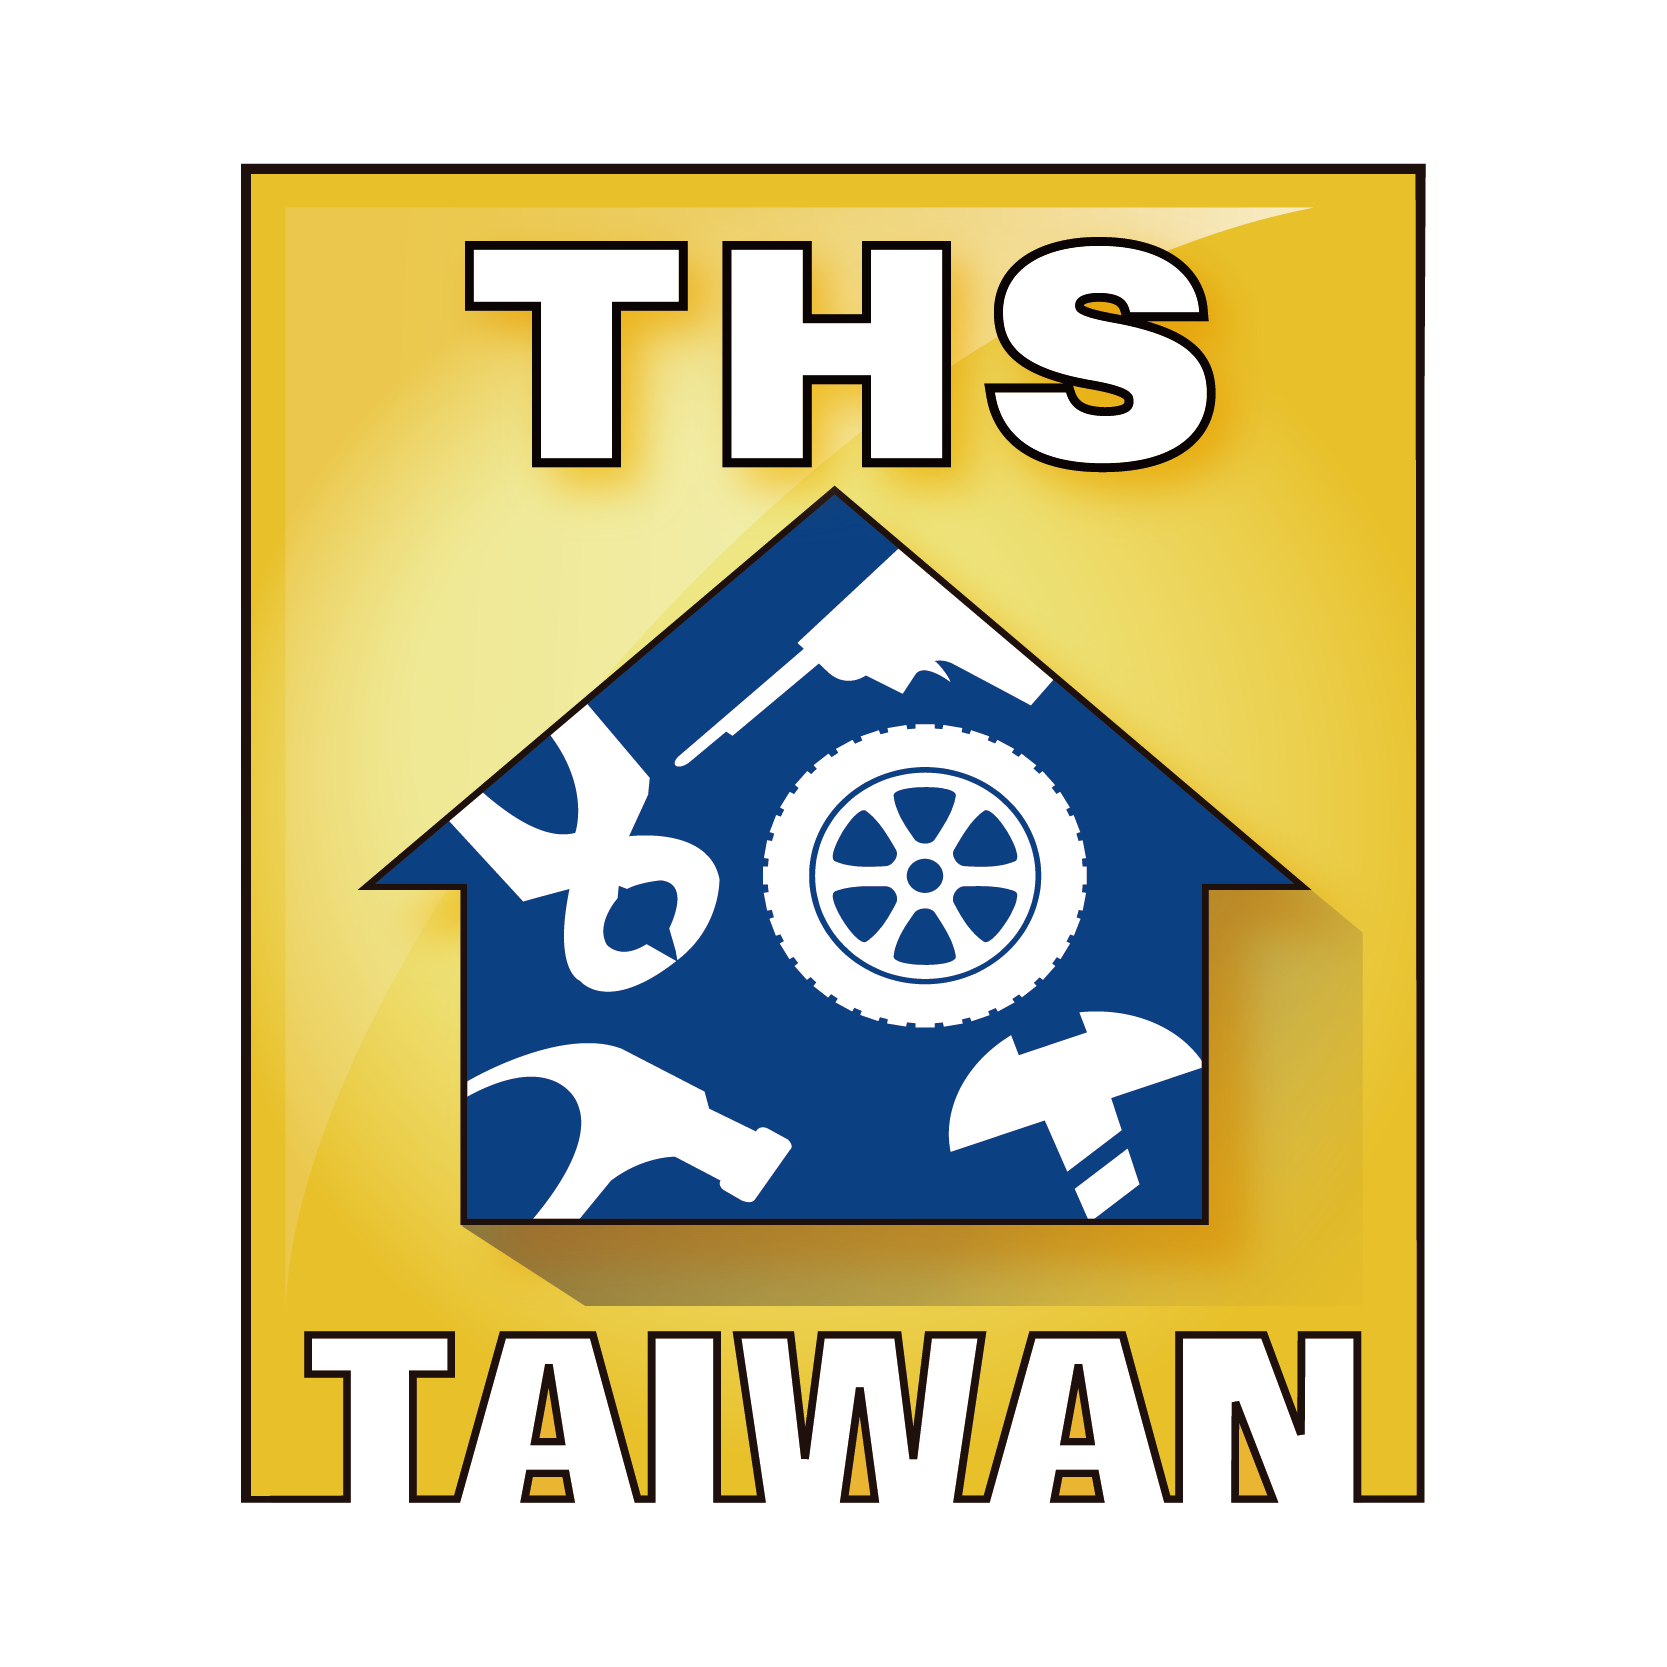 Taiwan Hardware Show 2024